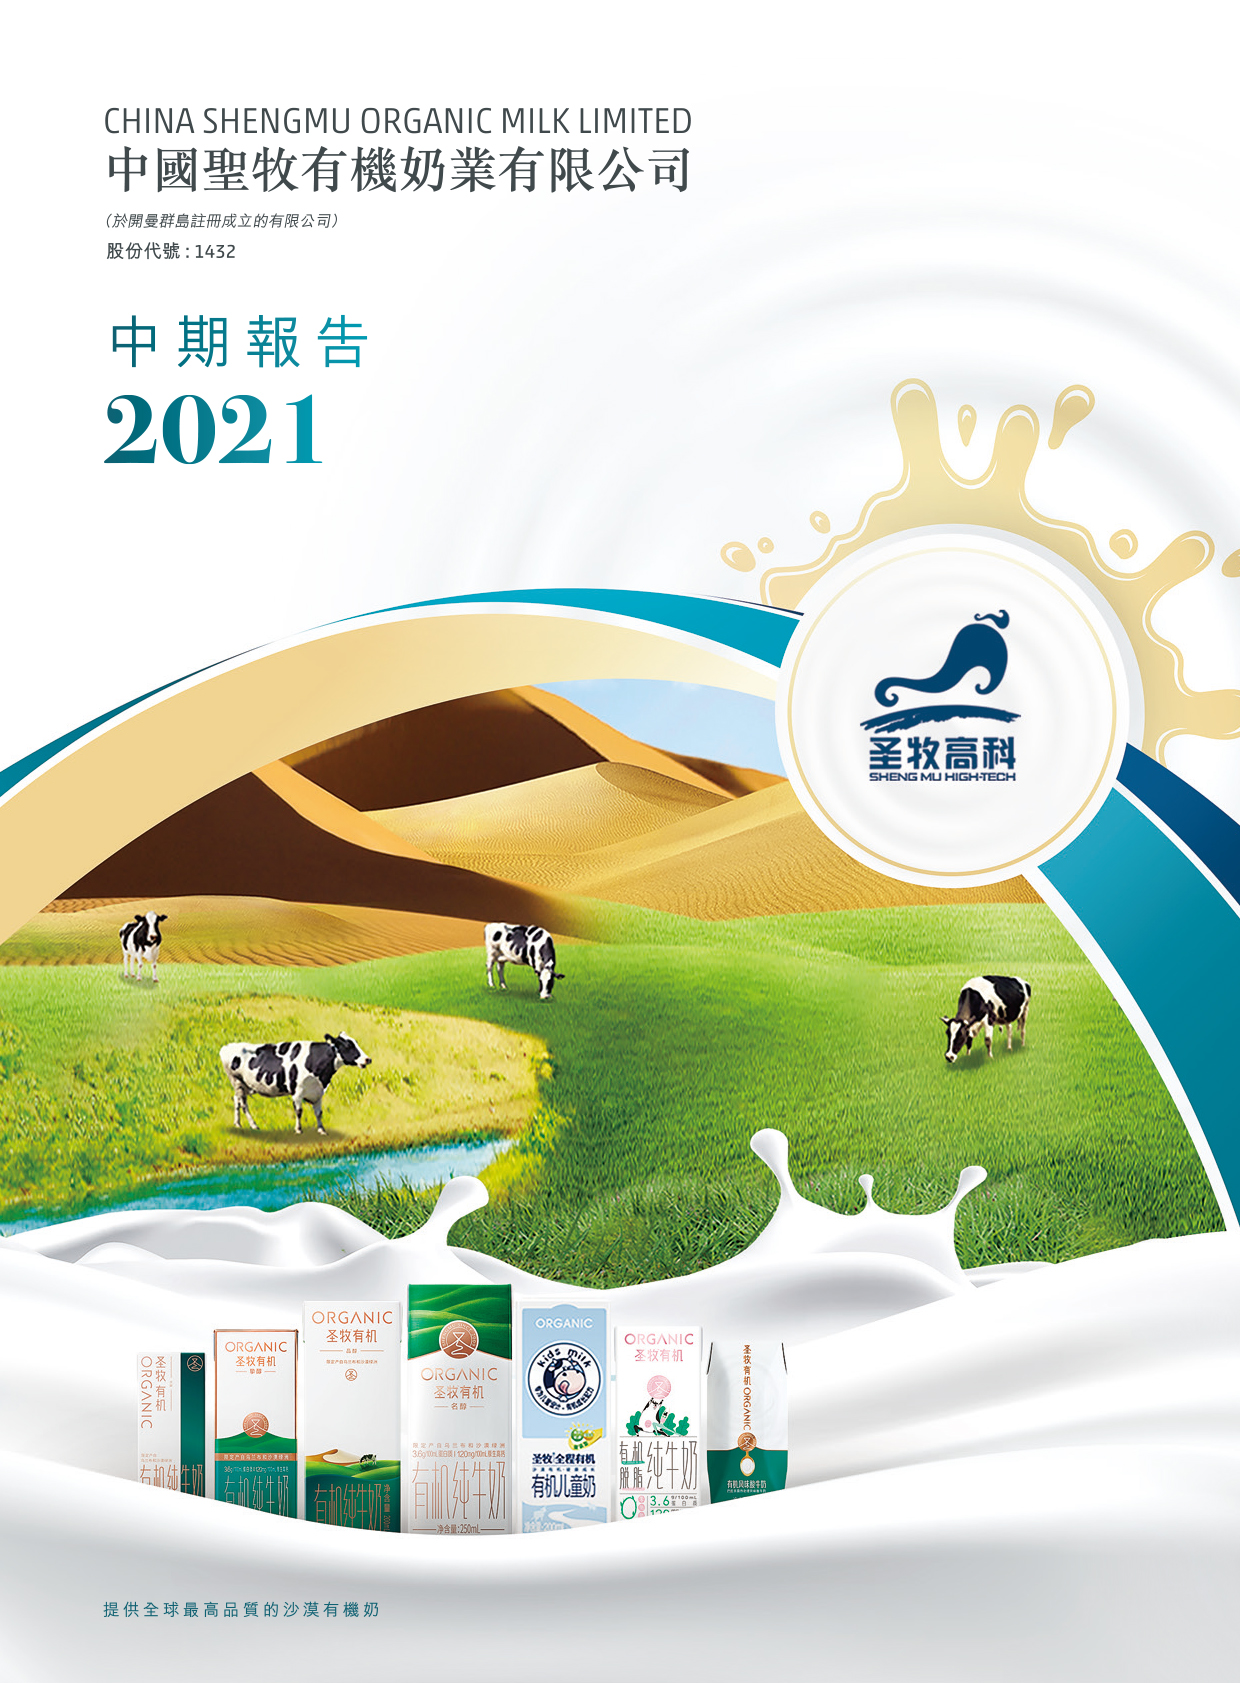 中國聖牧有機奶業有限公司